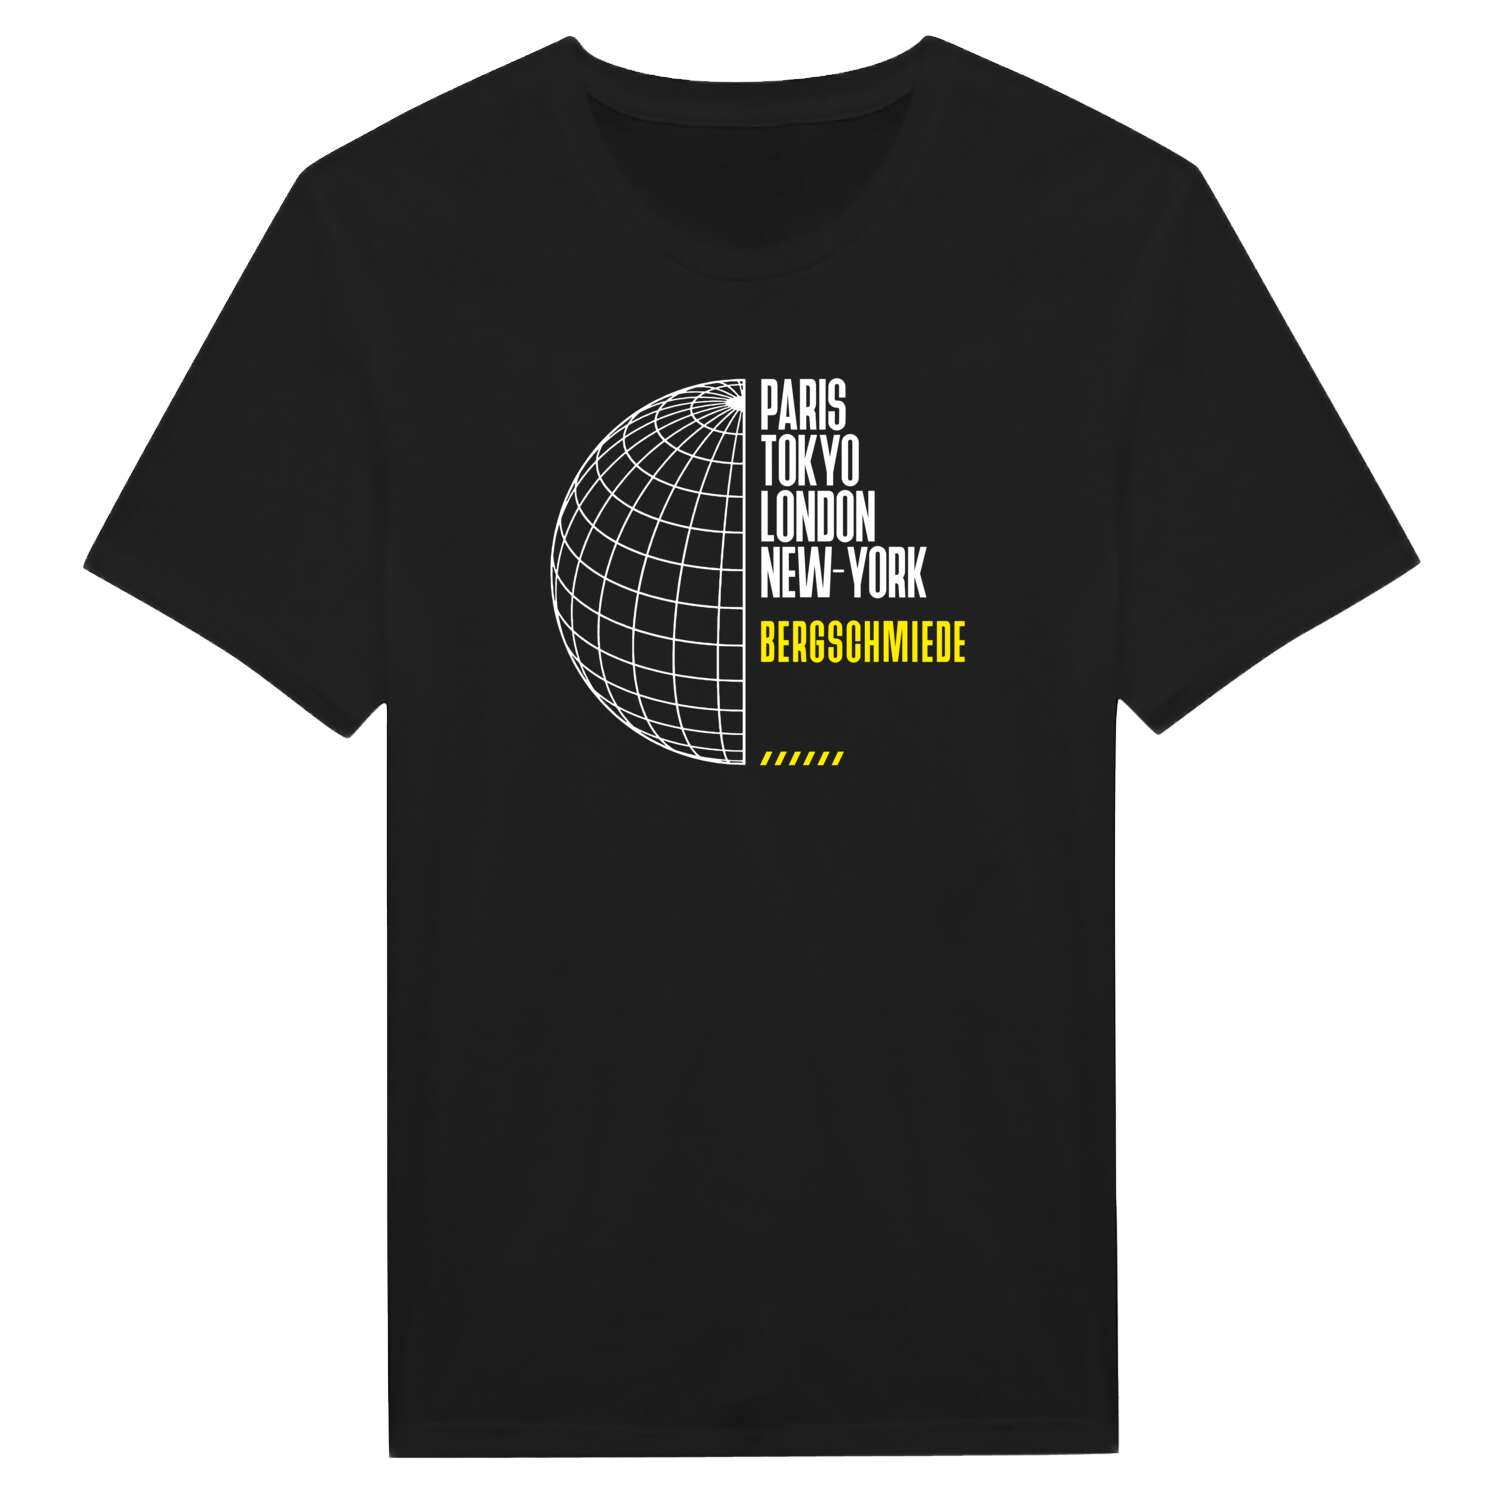 Bergschmiede T-Shirt »Paris Tokyo London«